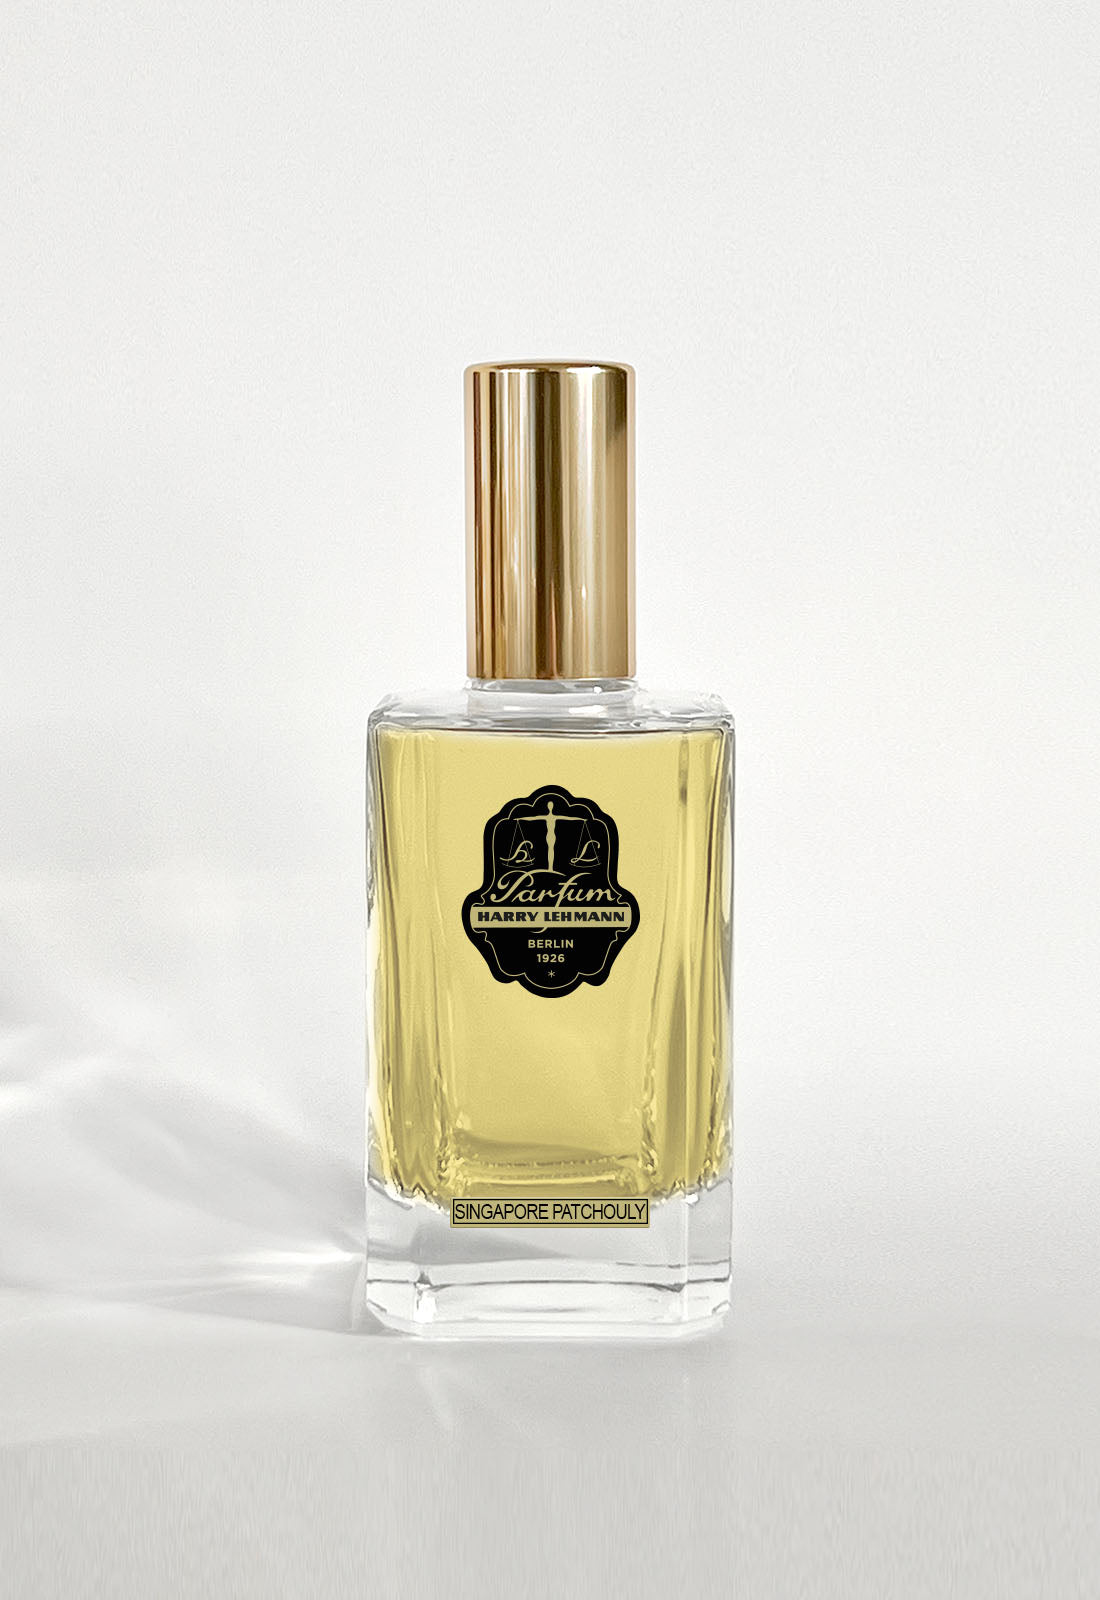 Harry Lehmann - Singapore Patchouly - Eau de Parfum - 100ml - Flacon mit Deckel